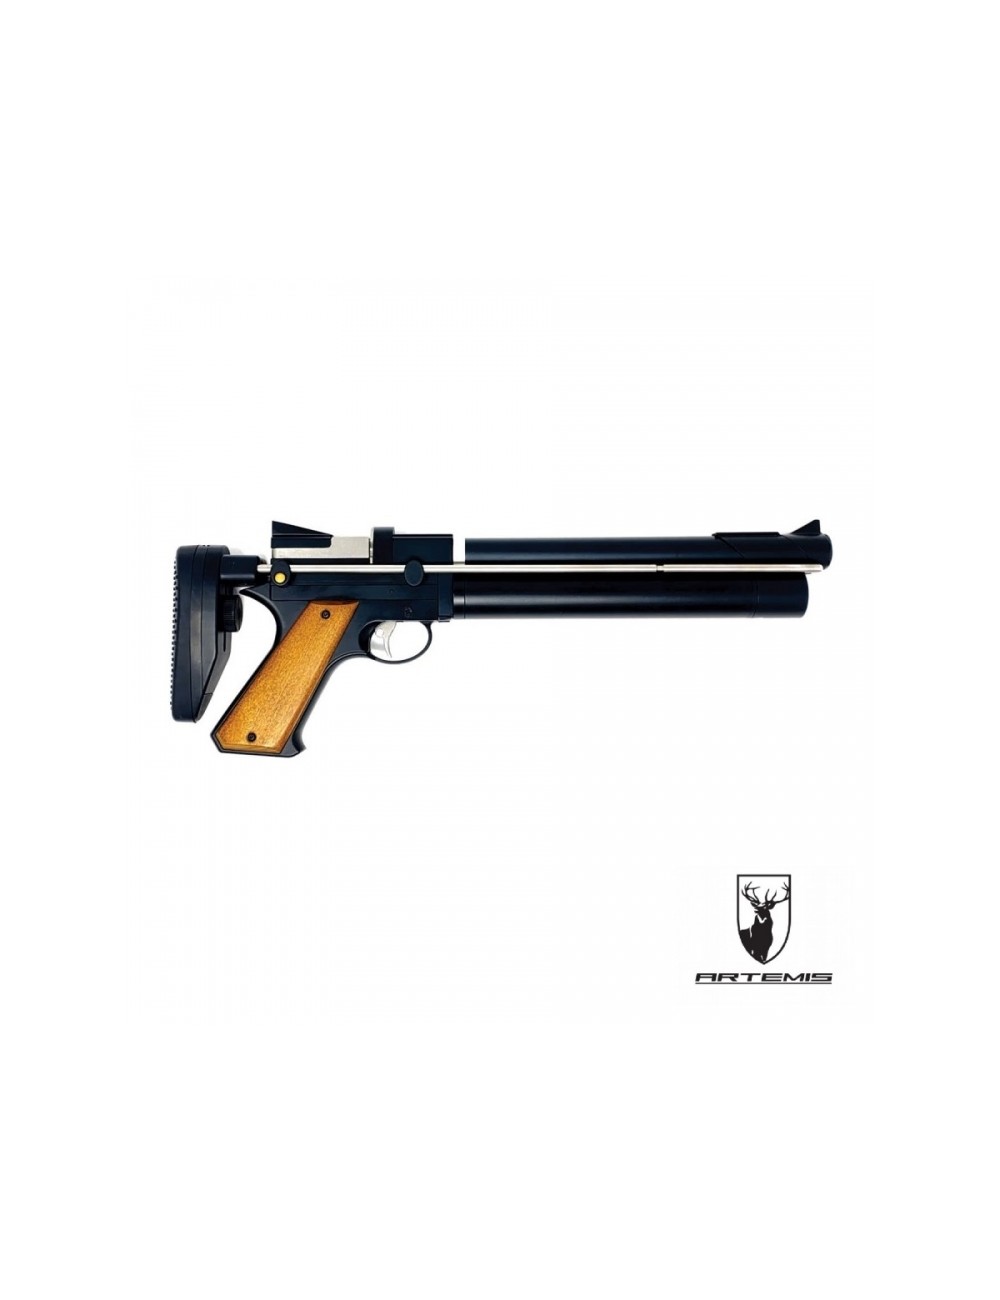 5,5 Mm Balines Pistola Zasdar CP1 Co2 Multi-Tiro Empuñadura Madera Picada Cal 